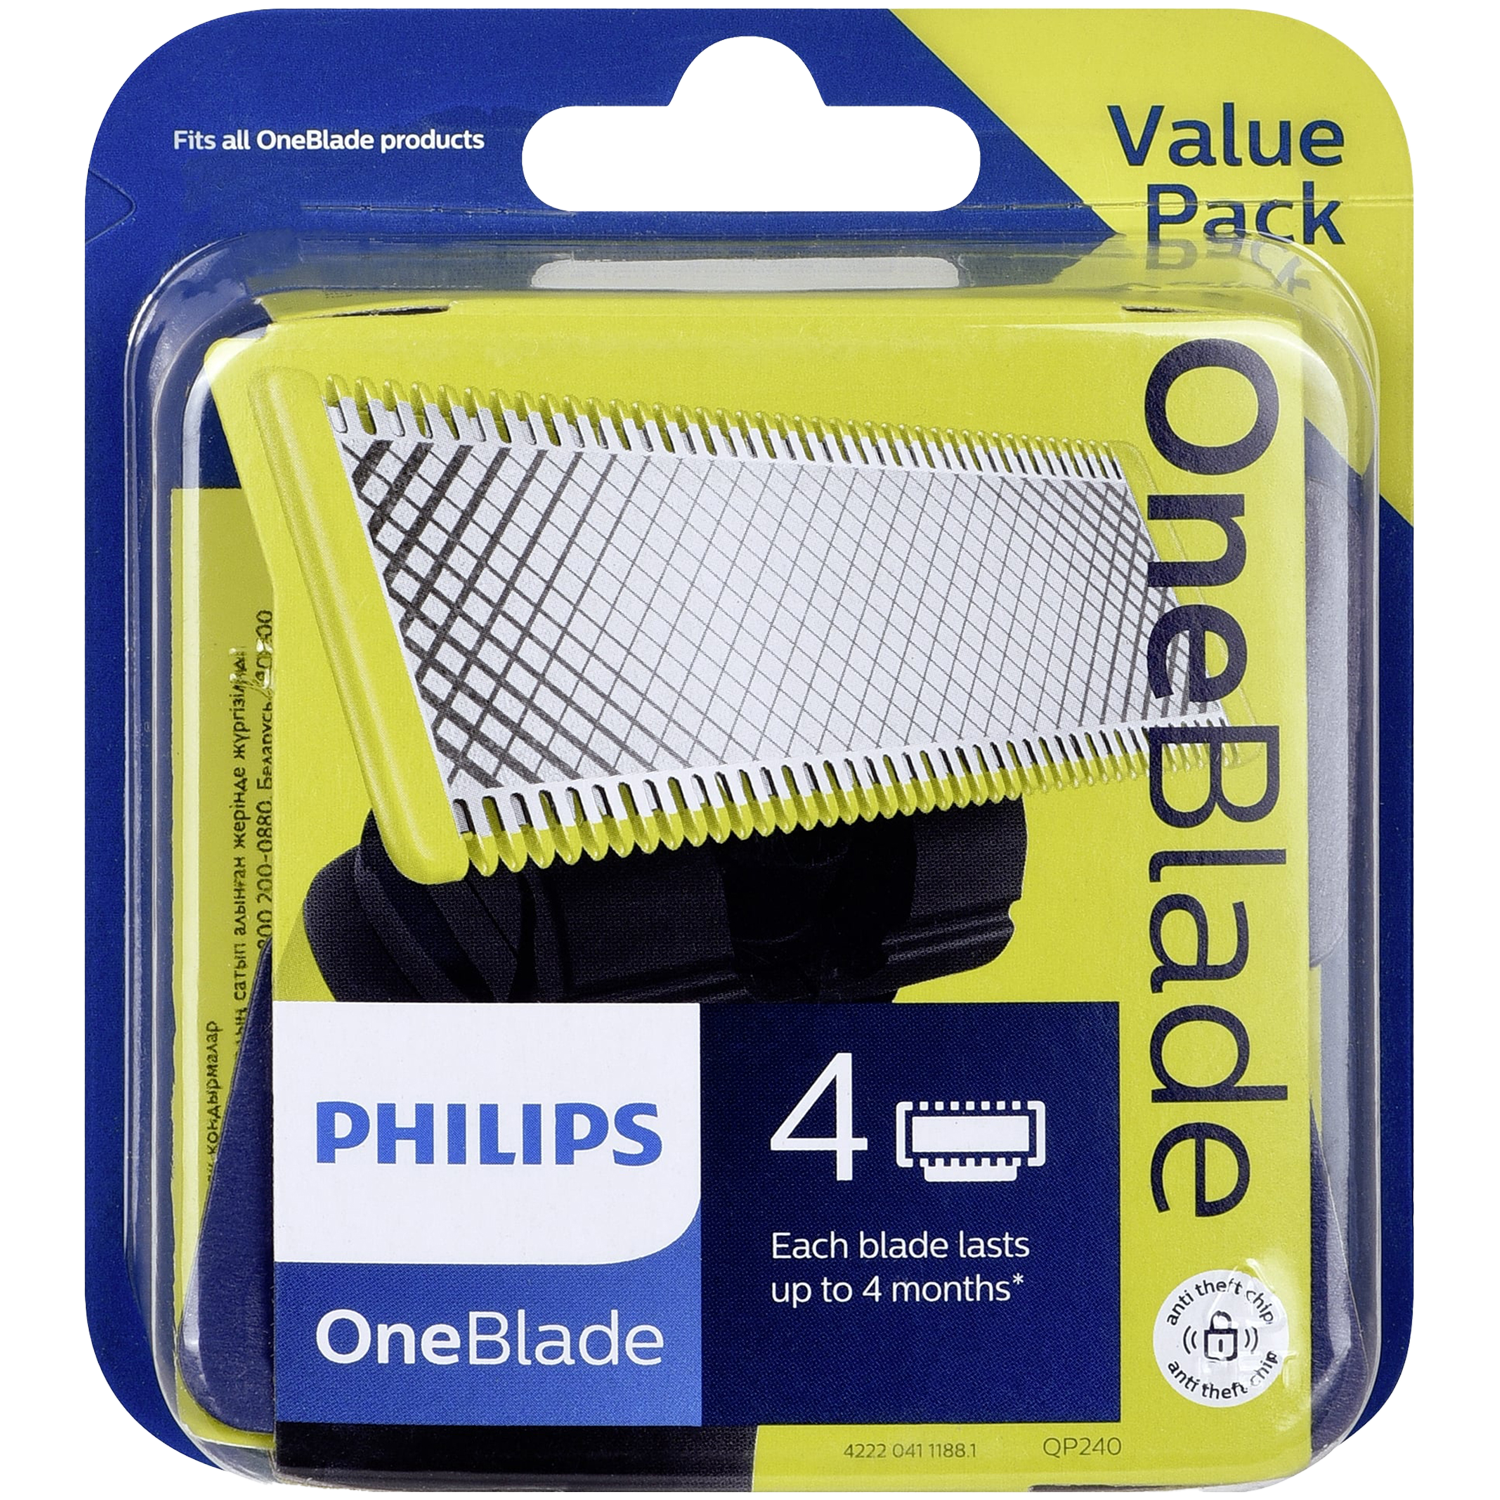 Philips Oneblade QP240/50 сменные лезвия, 4 шт./1 упаковка philips oneblade qp240 50 сменные лезвия 4 шт 1 упаковка